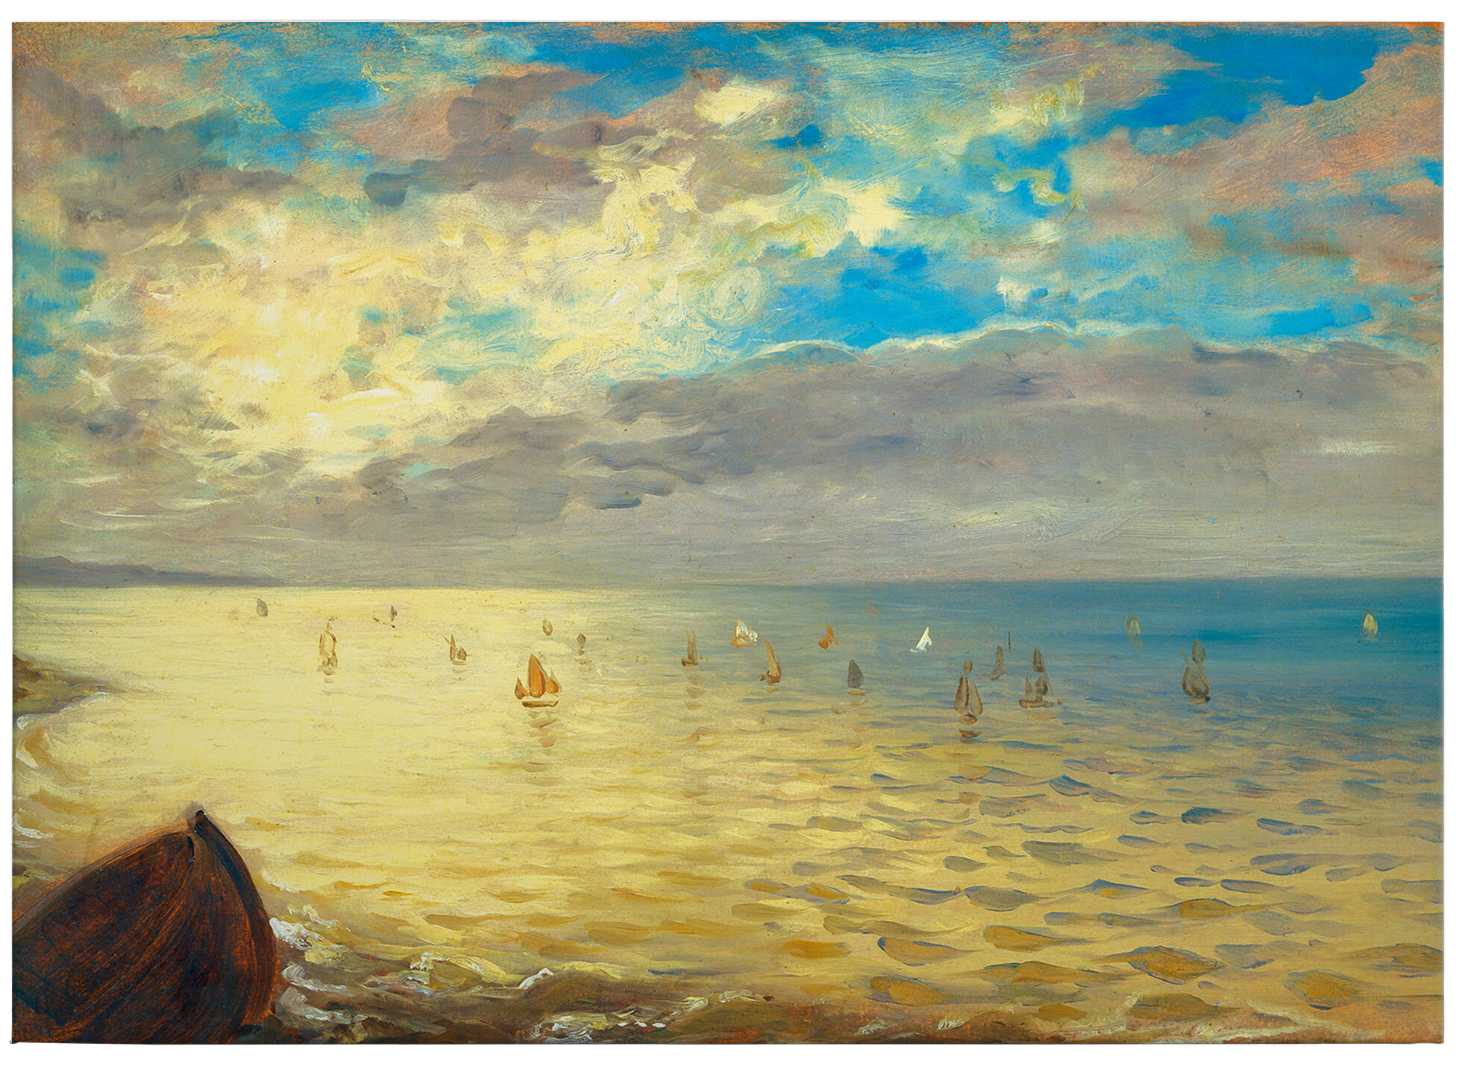             Cuadro "El mar" de Delacroix - 0,70 m x 0,50 m
        